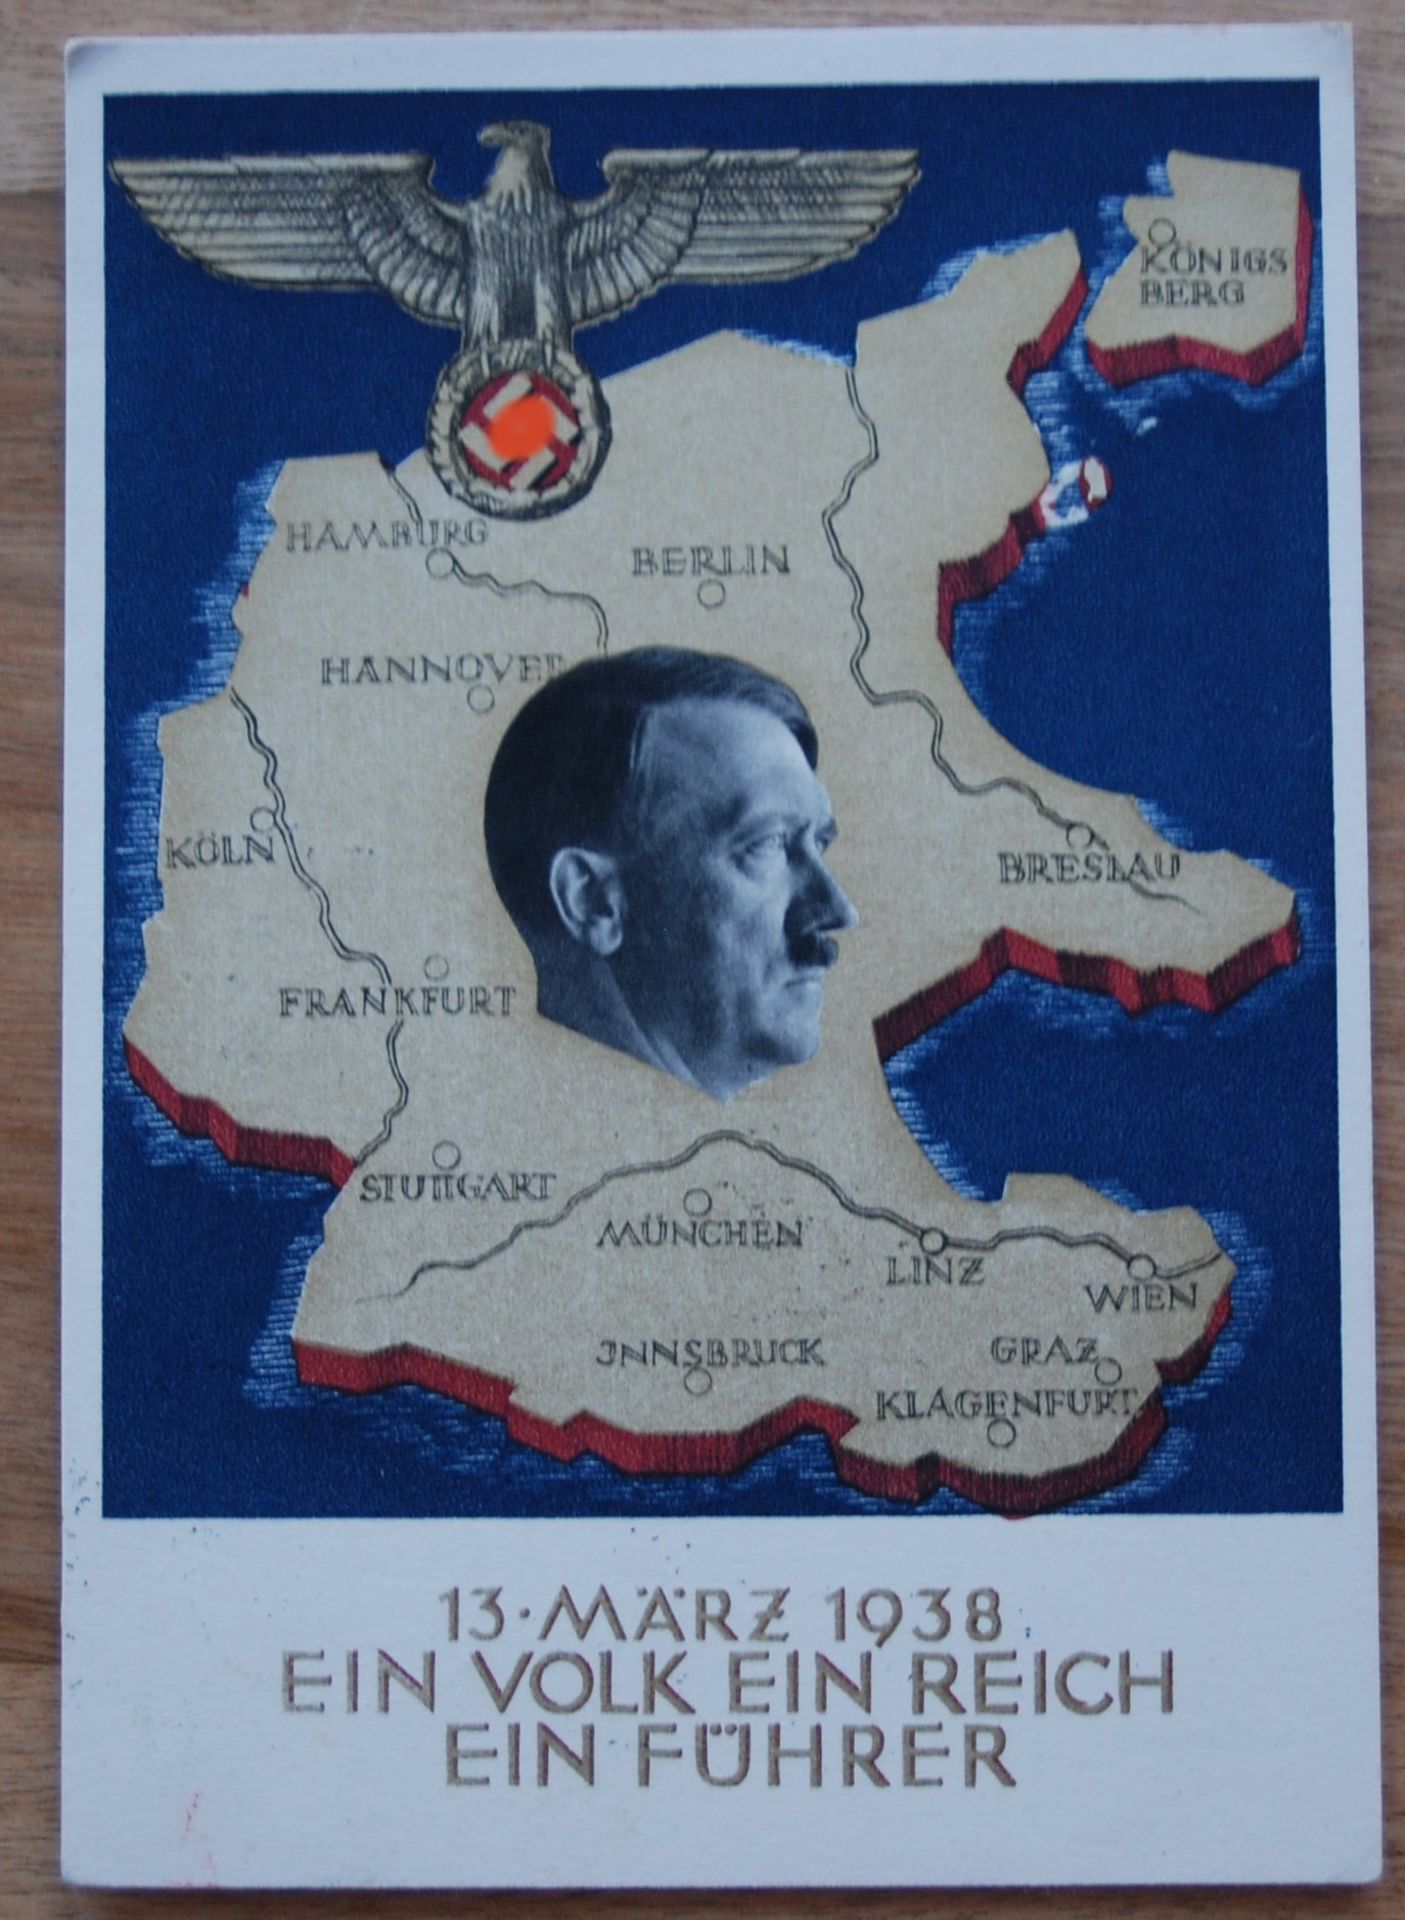 Postkarte "Ein Volk, ein Reich, ein Führer" gelaufe